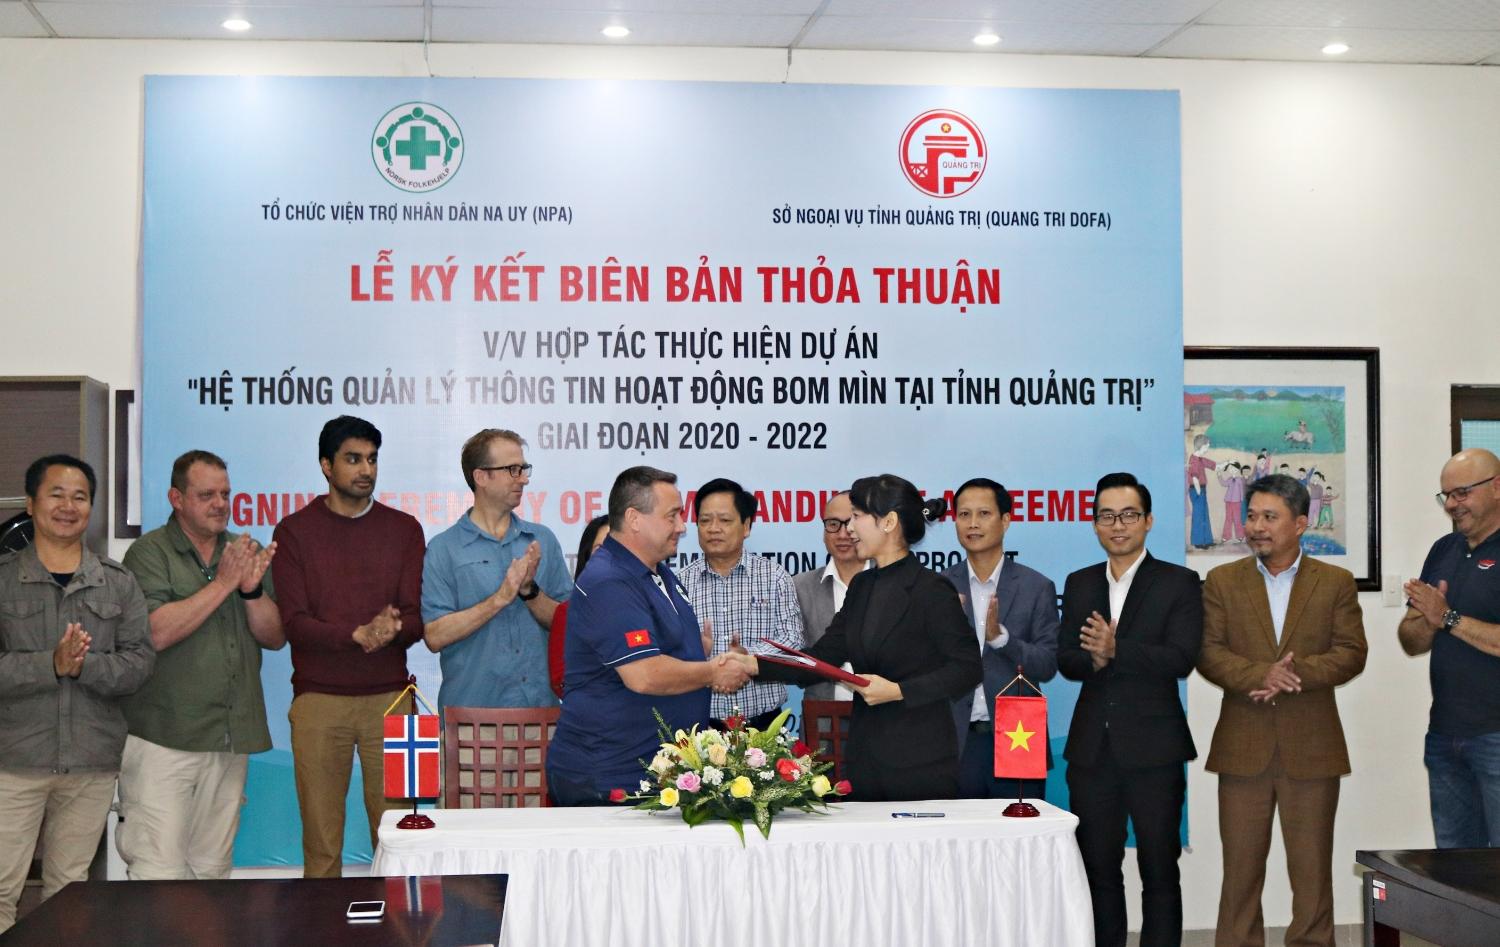 Sở Ngoại vụ tỉnh Quảng Trị ký Biên bản thỏa thuận với Tổ chức Quỹ Viện trợ nhân dân Na Uy tại Việt...